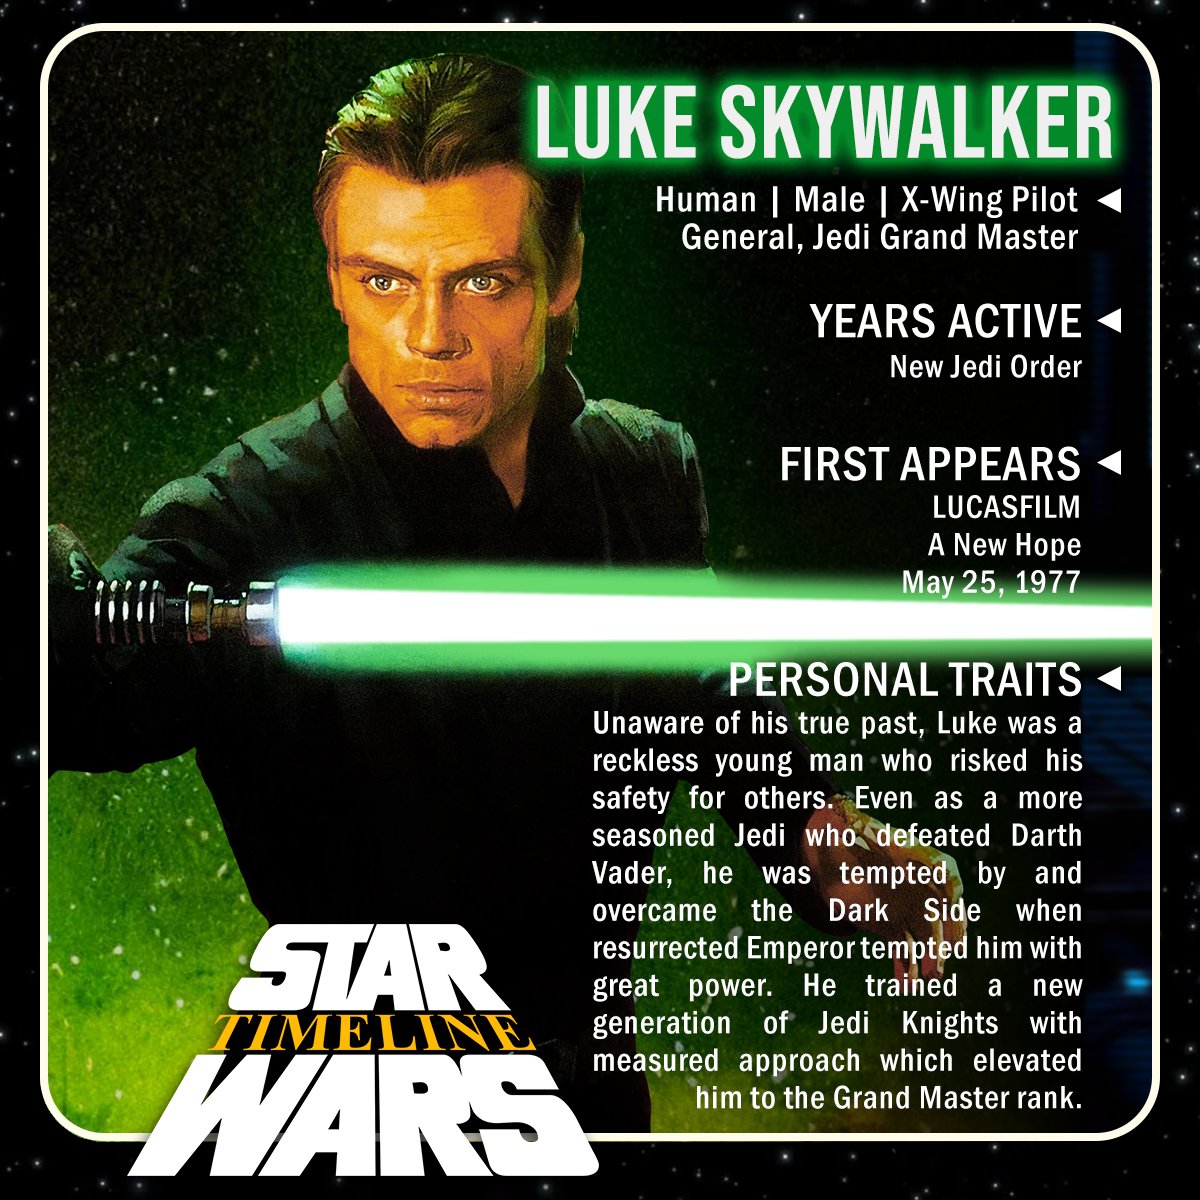 Say AYE if you feel Luke is the greatest cinematic hero!